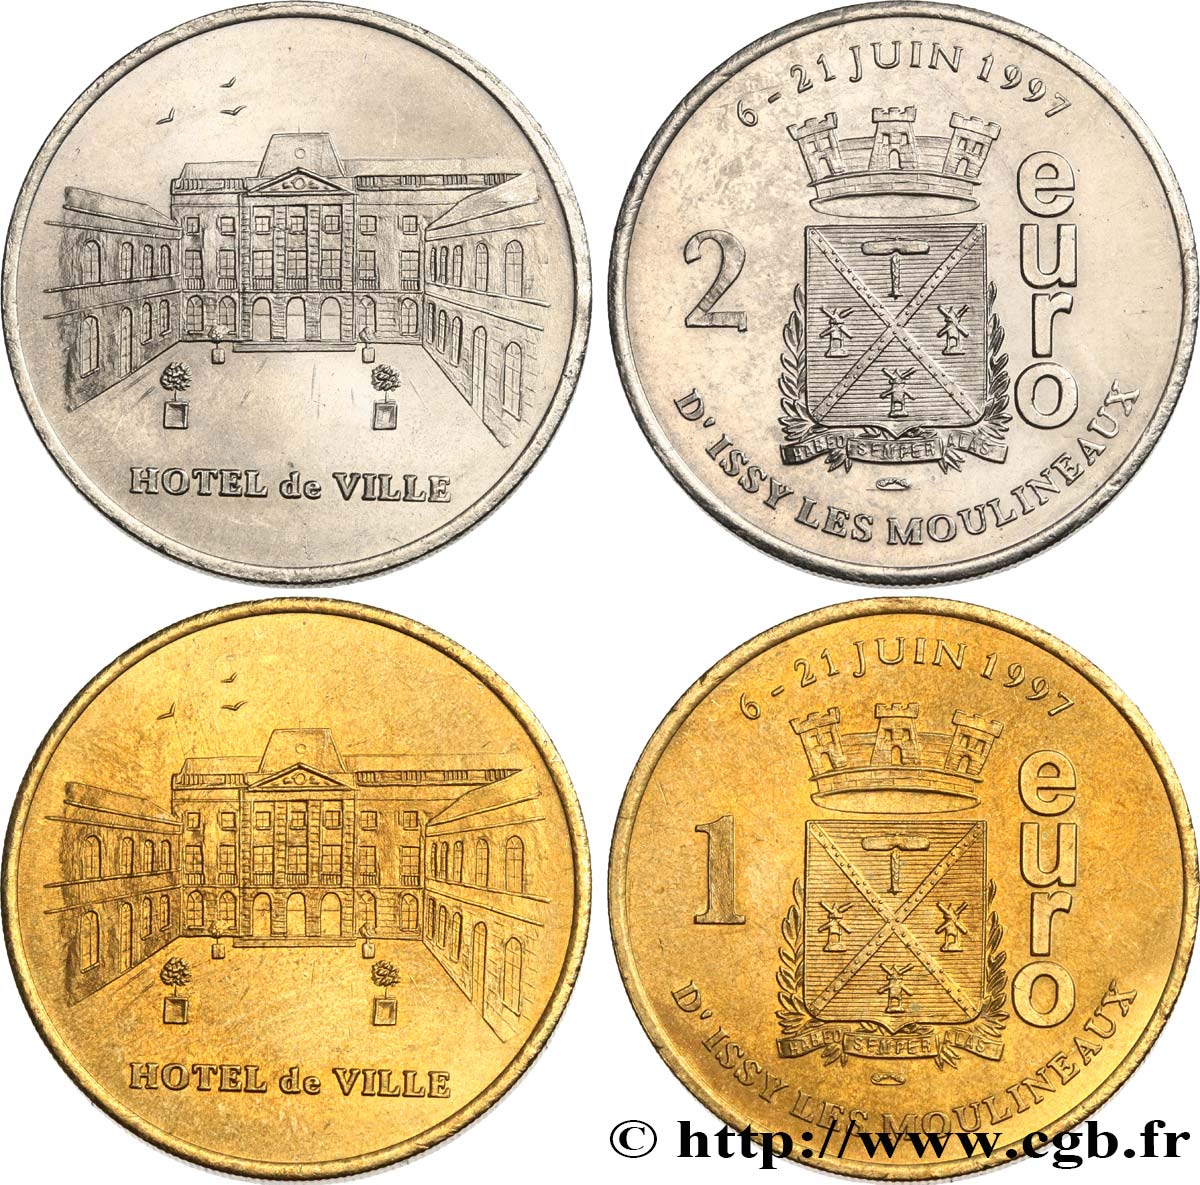 FRANKREICH Lot 1 et 2 Euro de Issy-les-Moulineaux (6 - 21 juin 1997) 1997